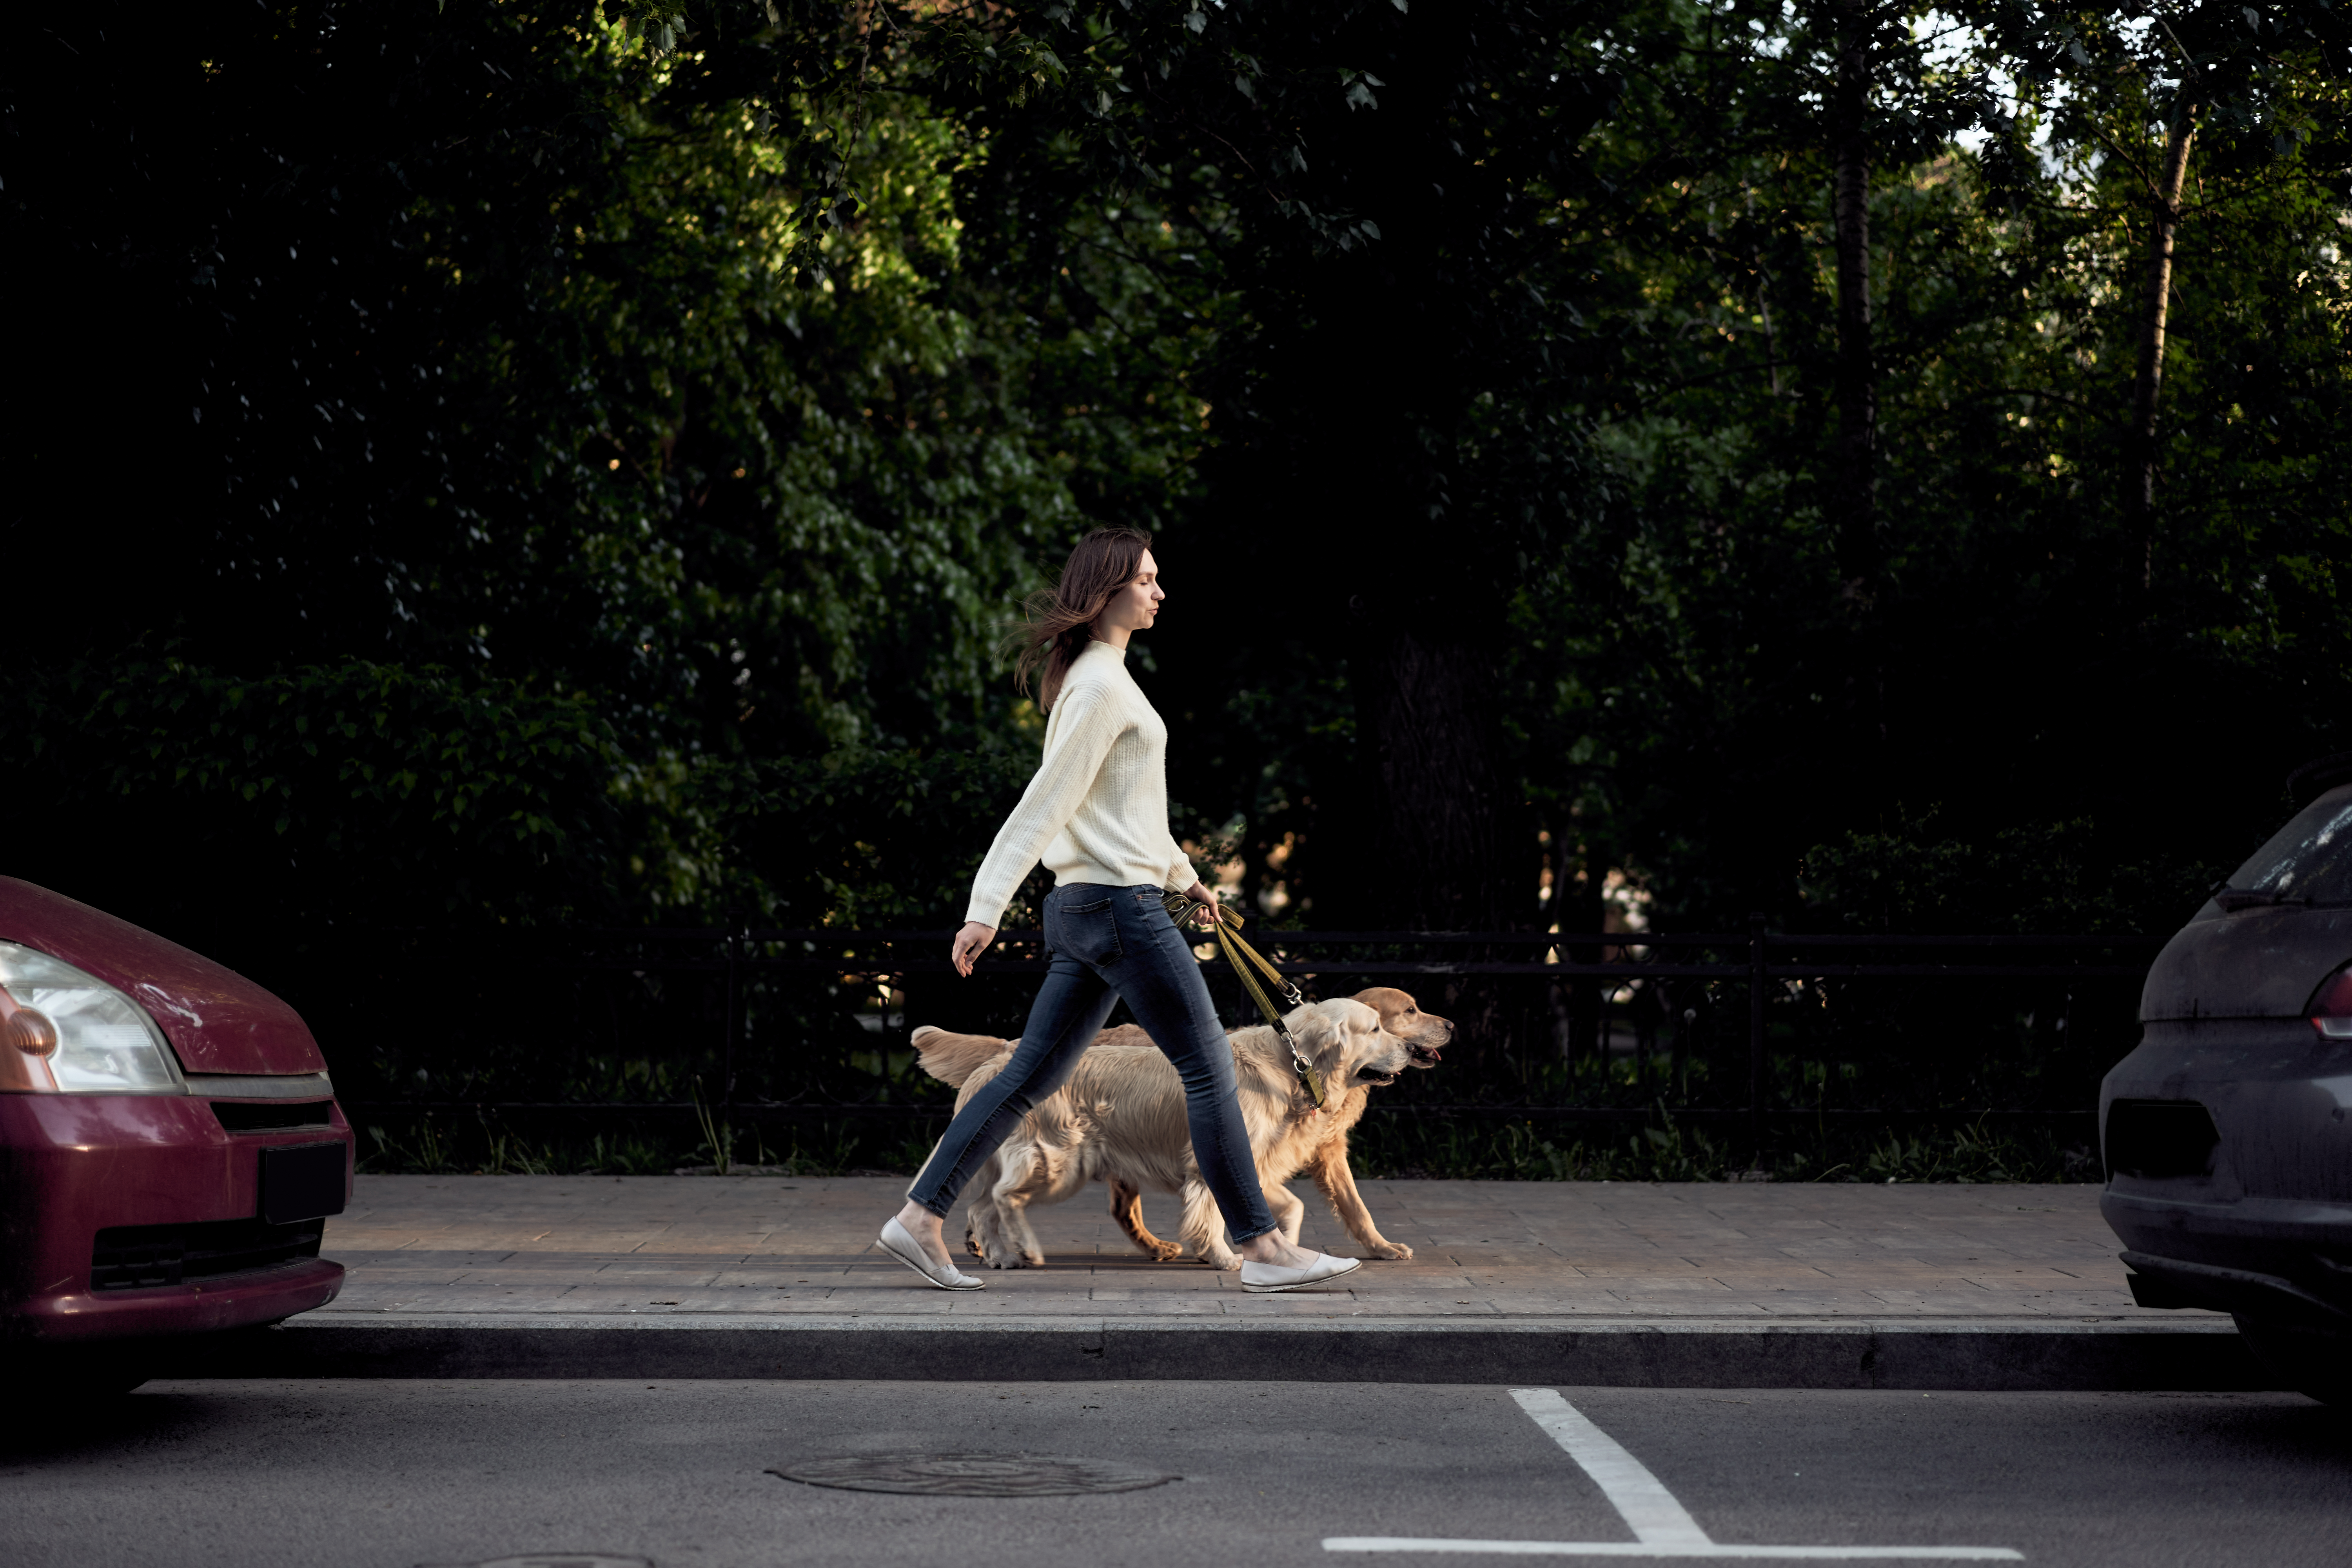 A városi kutyasétáltatás etikettje – Ezeket tartsuk be, hogy problémamentes legyen a közlekedés kedvencünkkel